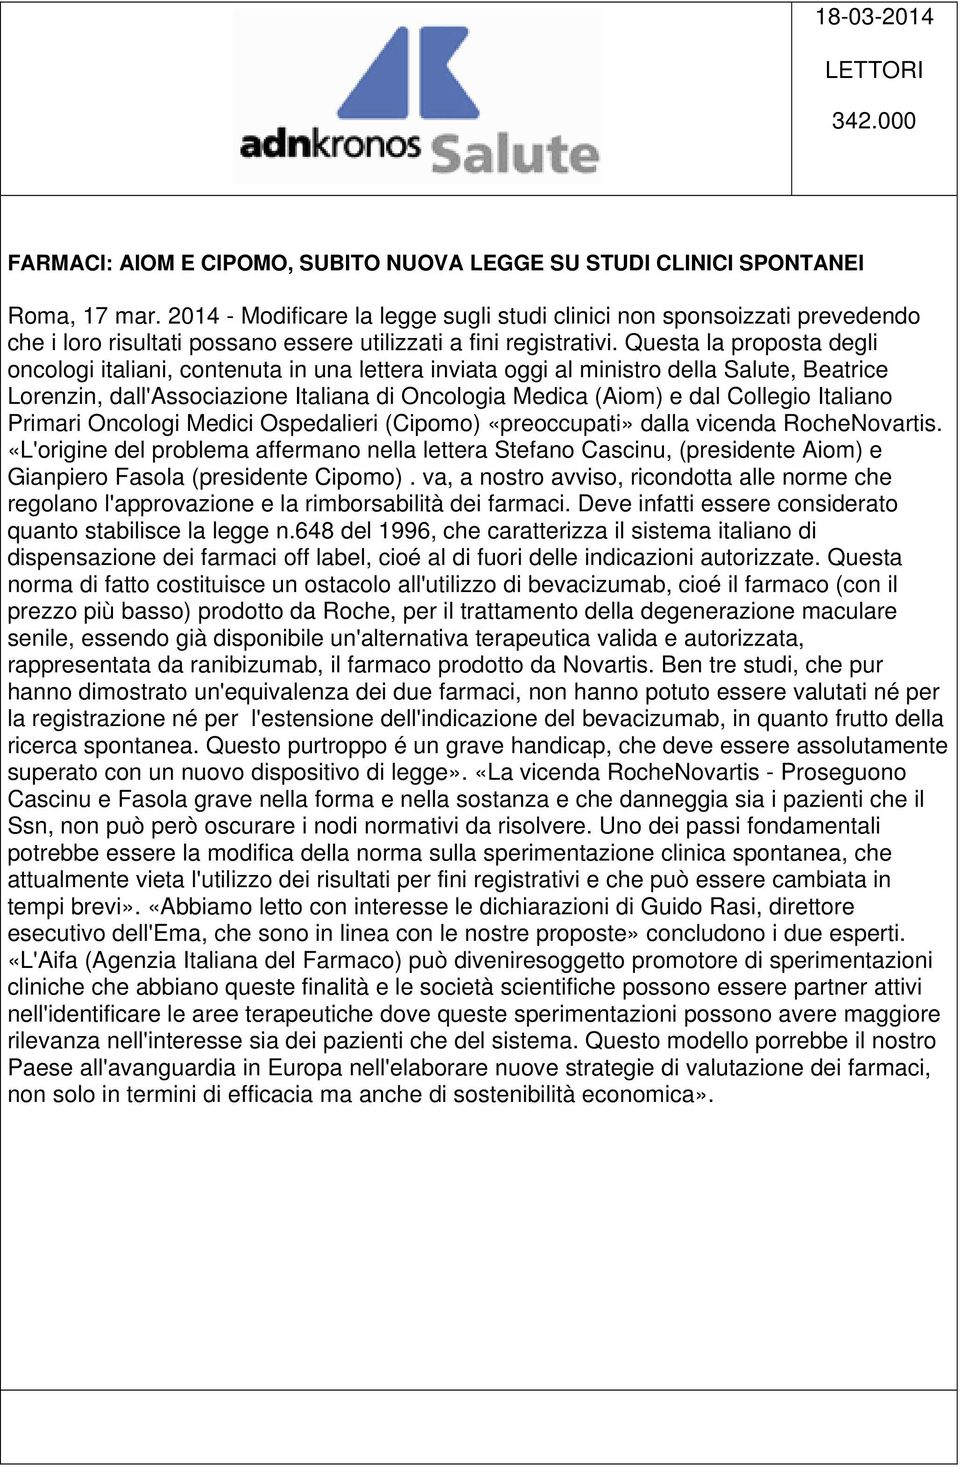 Questa la proposta degli oncologi italiani, contenuta in una lettera inviata oggi al ministro della Salute, Beatrice Lorenzin, dall'associazione Italiana di Oncologia Medica (Aiom) e dal Collegio